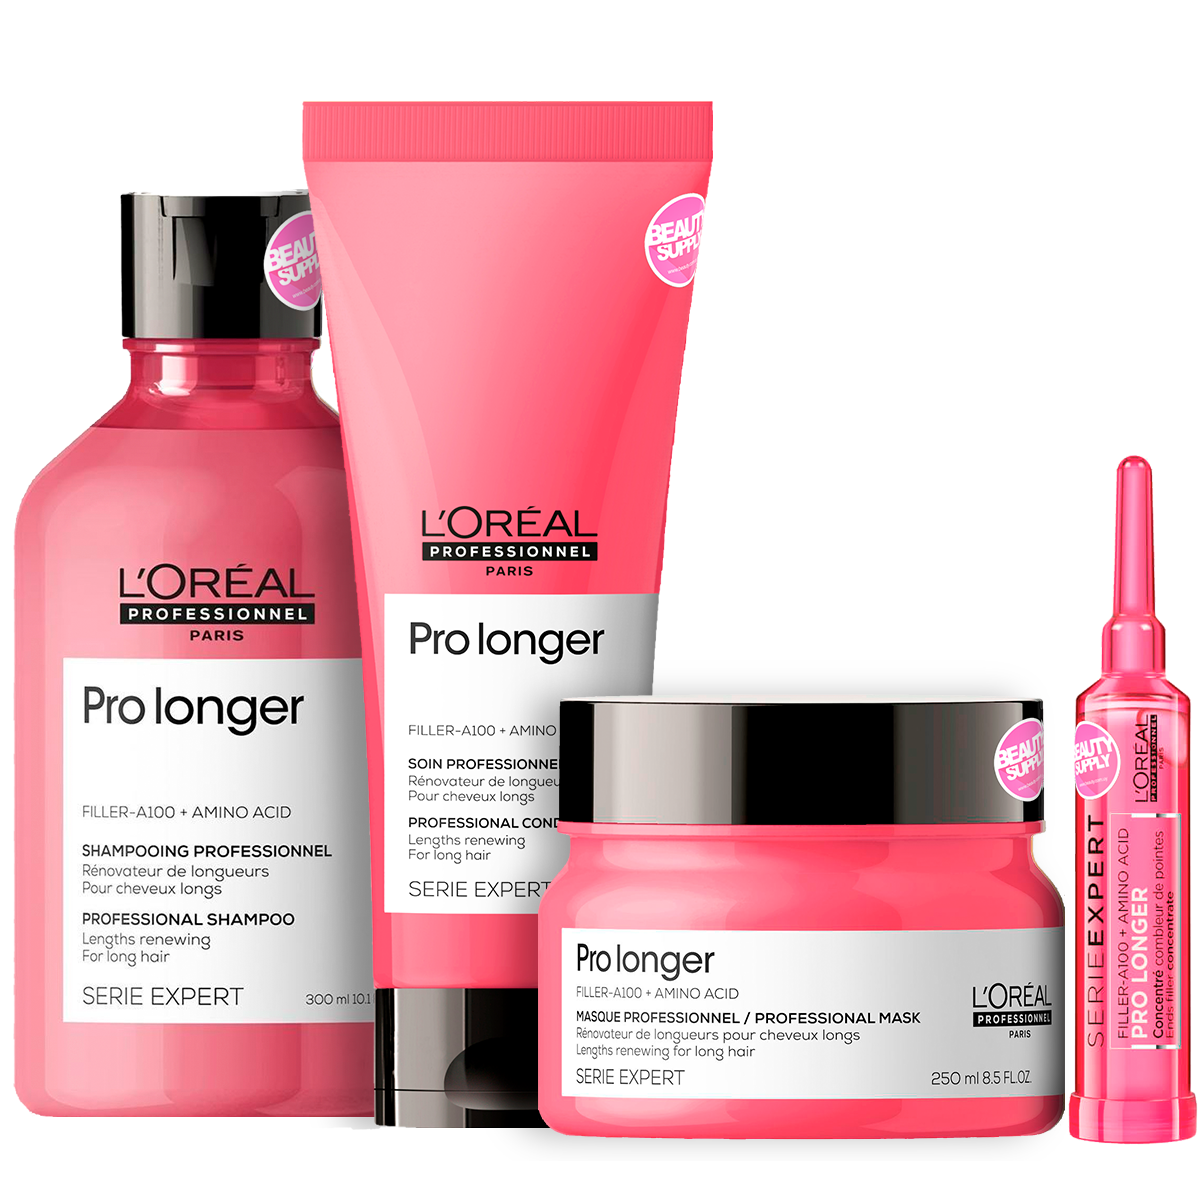 Shampoo, Acondicionador, Ampolla Y Mascara Loreal Prolonger en Beauty Supply